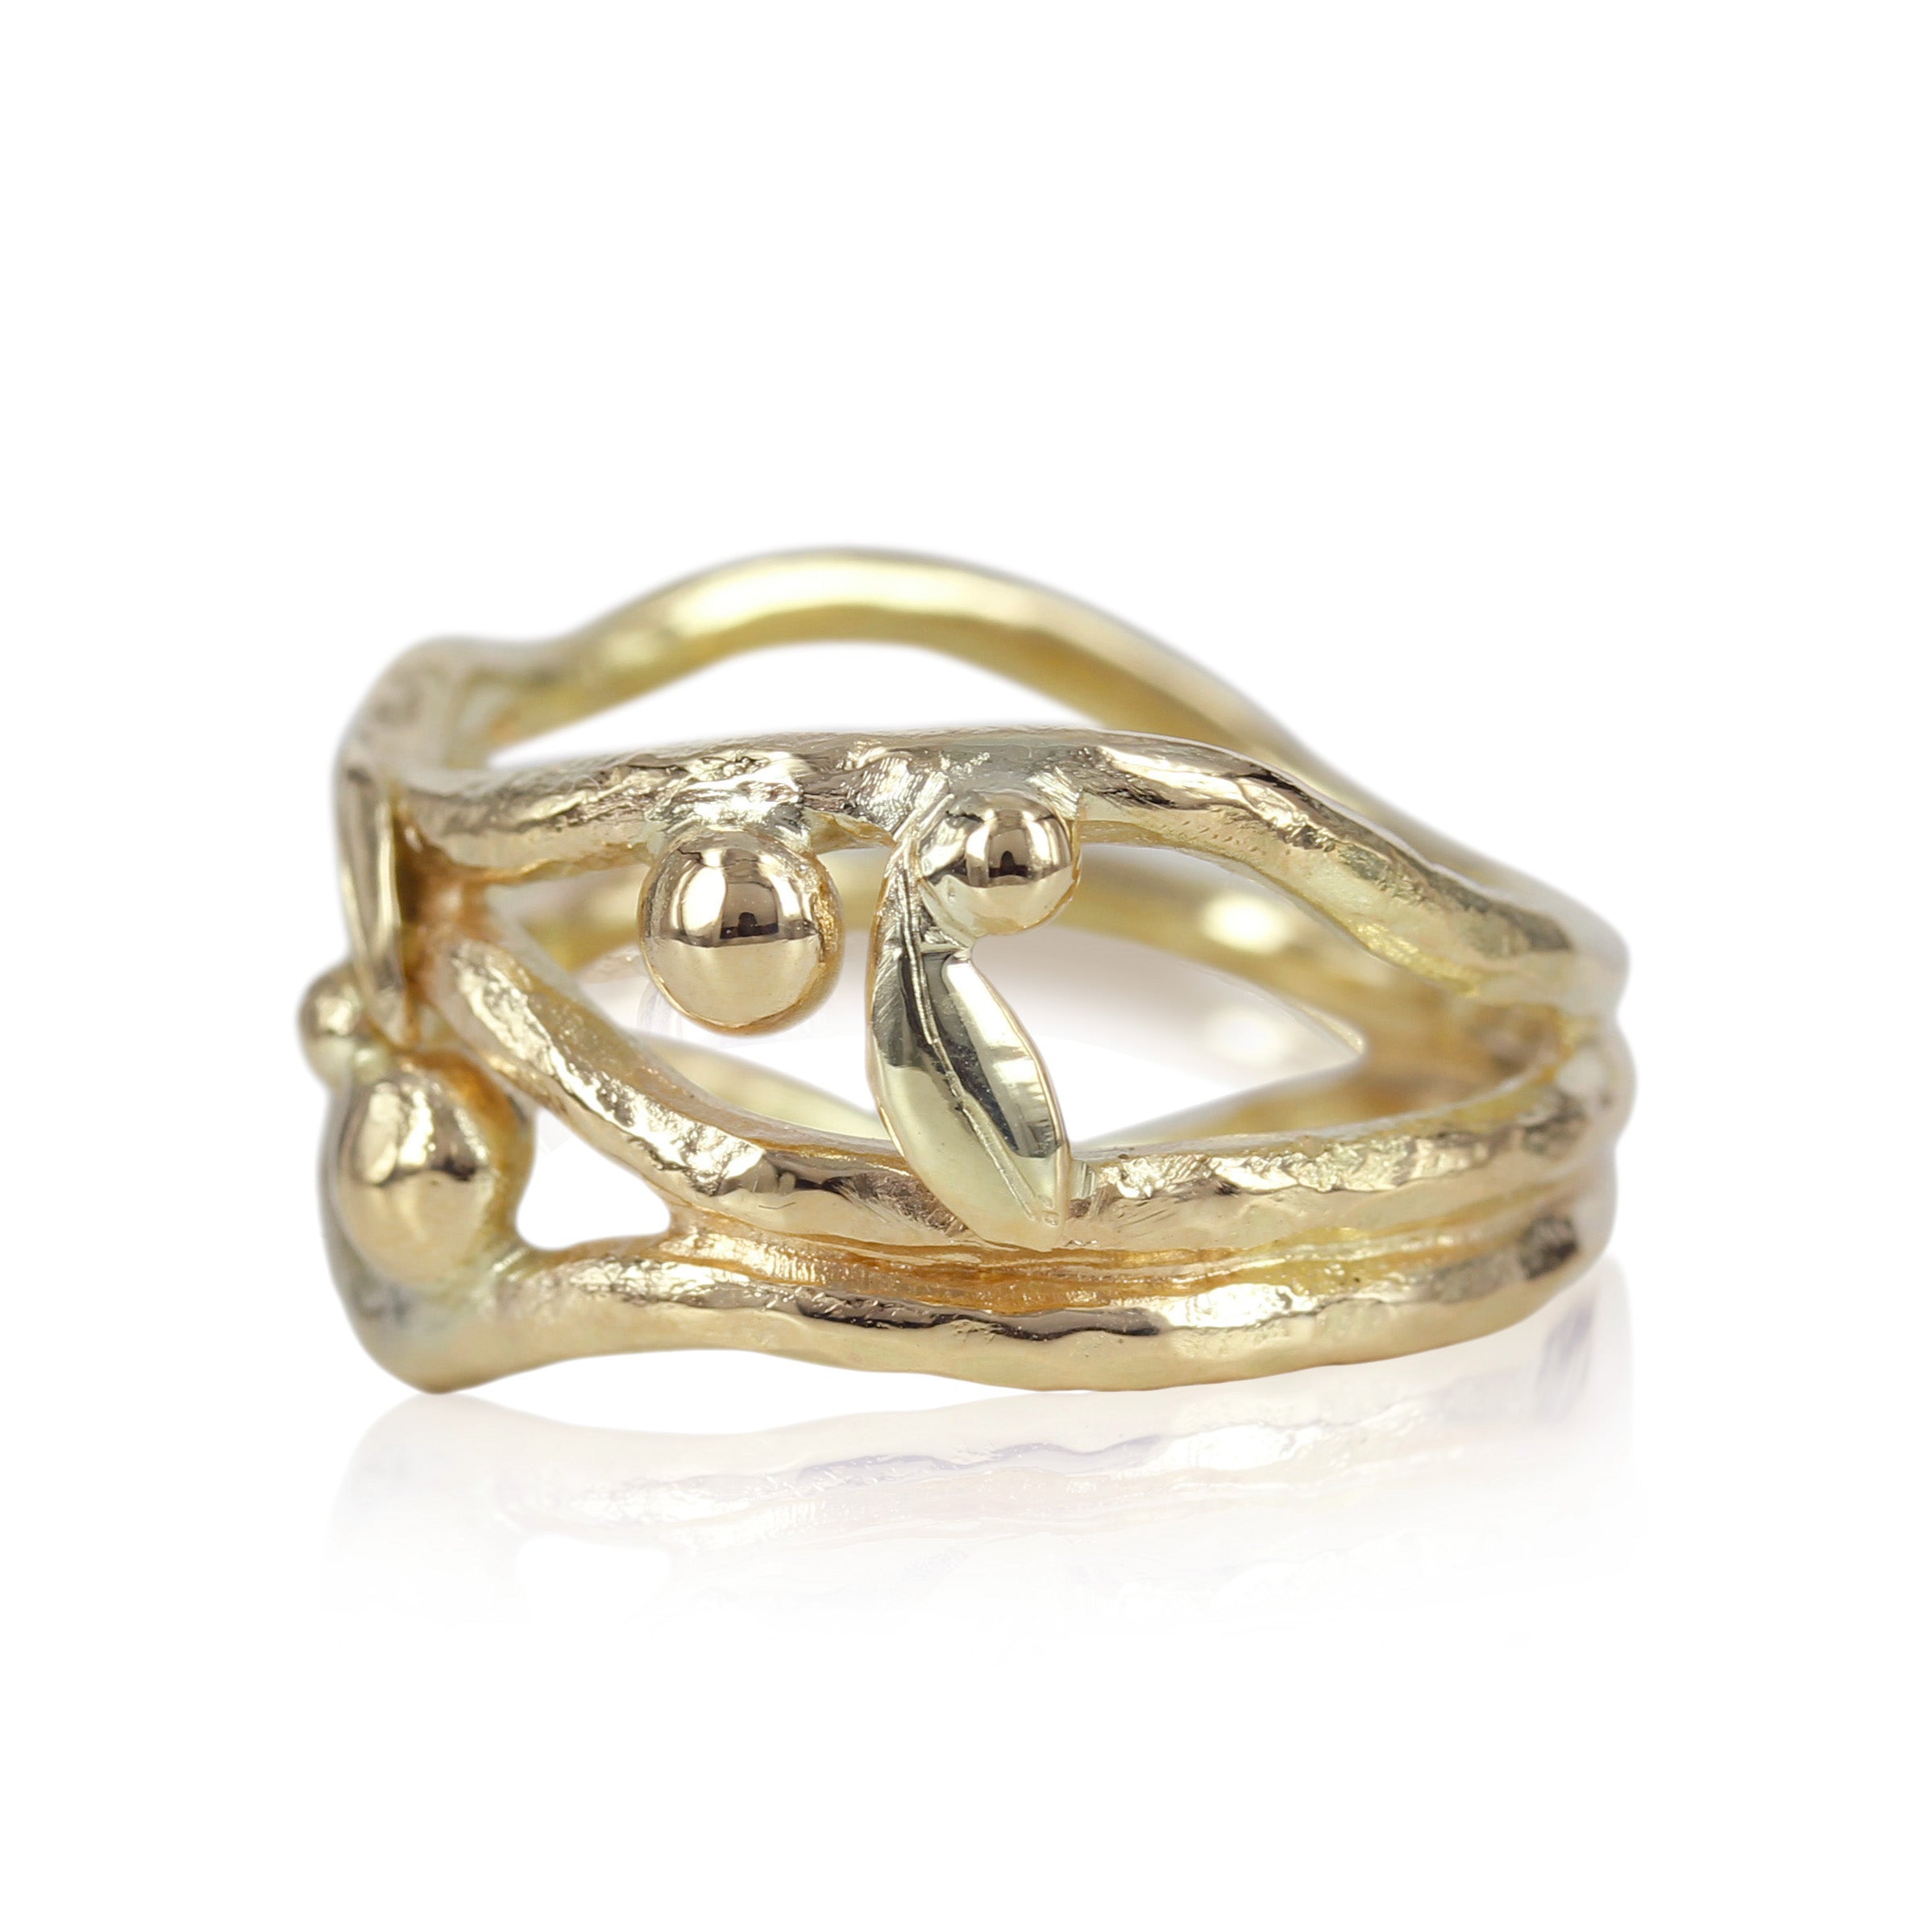 Smuk unika ring skabt med smuk rustik overflade, de fine guld kugler og fine blomster giver ringen en fornemmelse af forår.  En fantastisk ring der kan bærer både til hverdag og til fest..